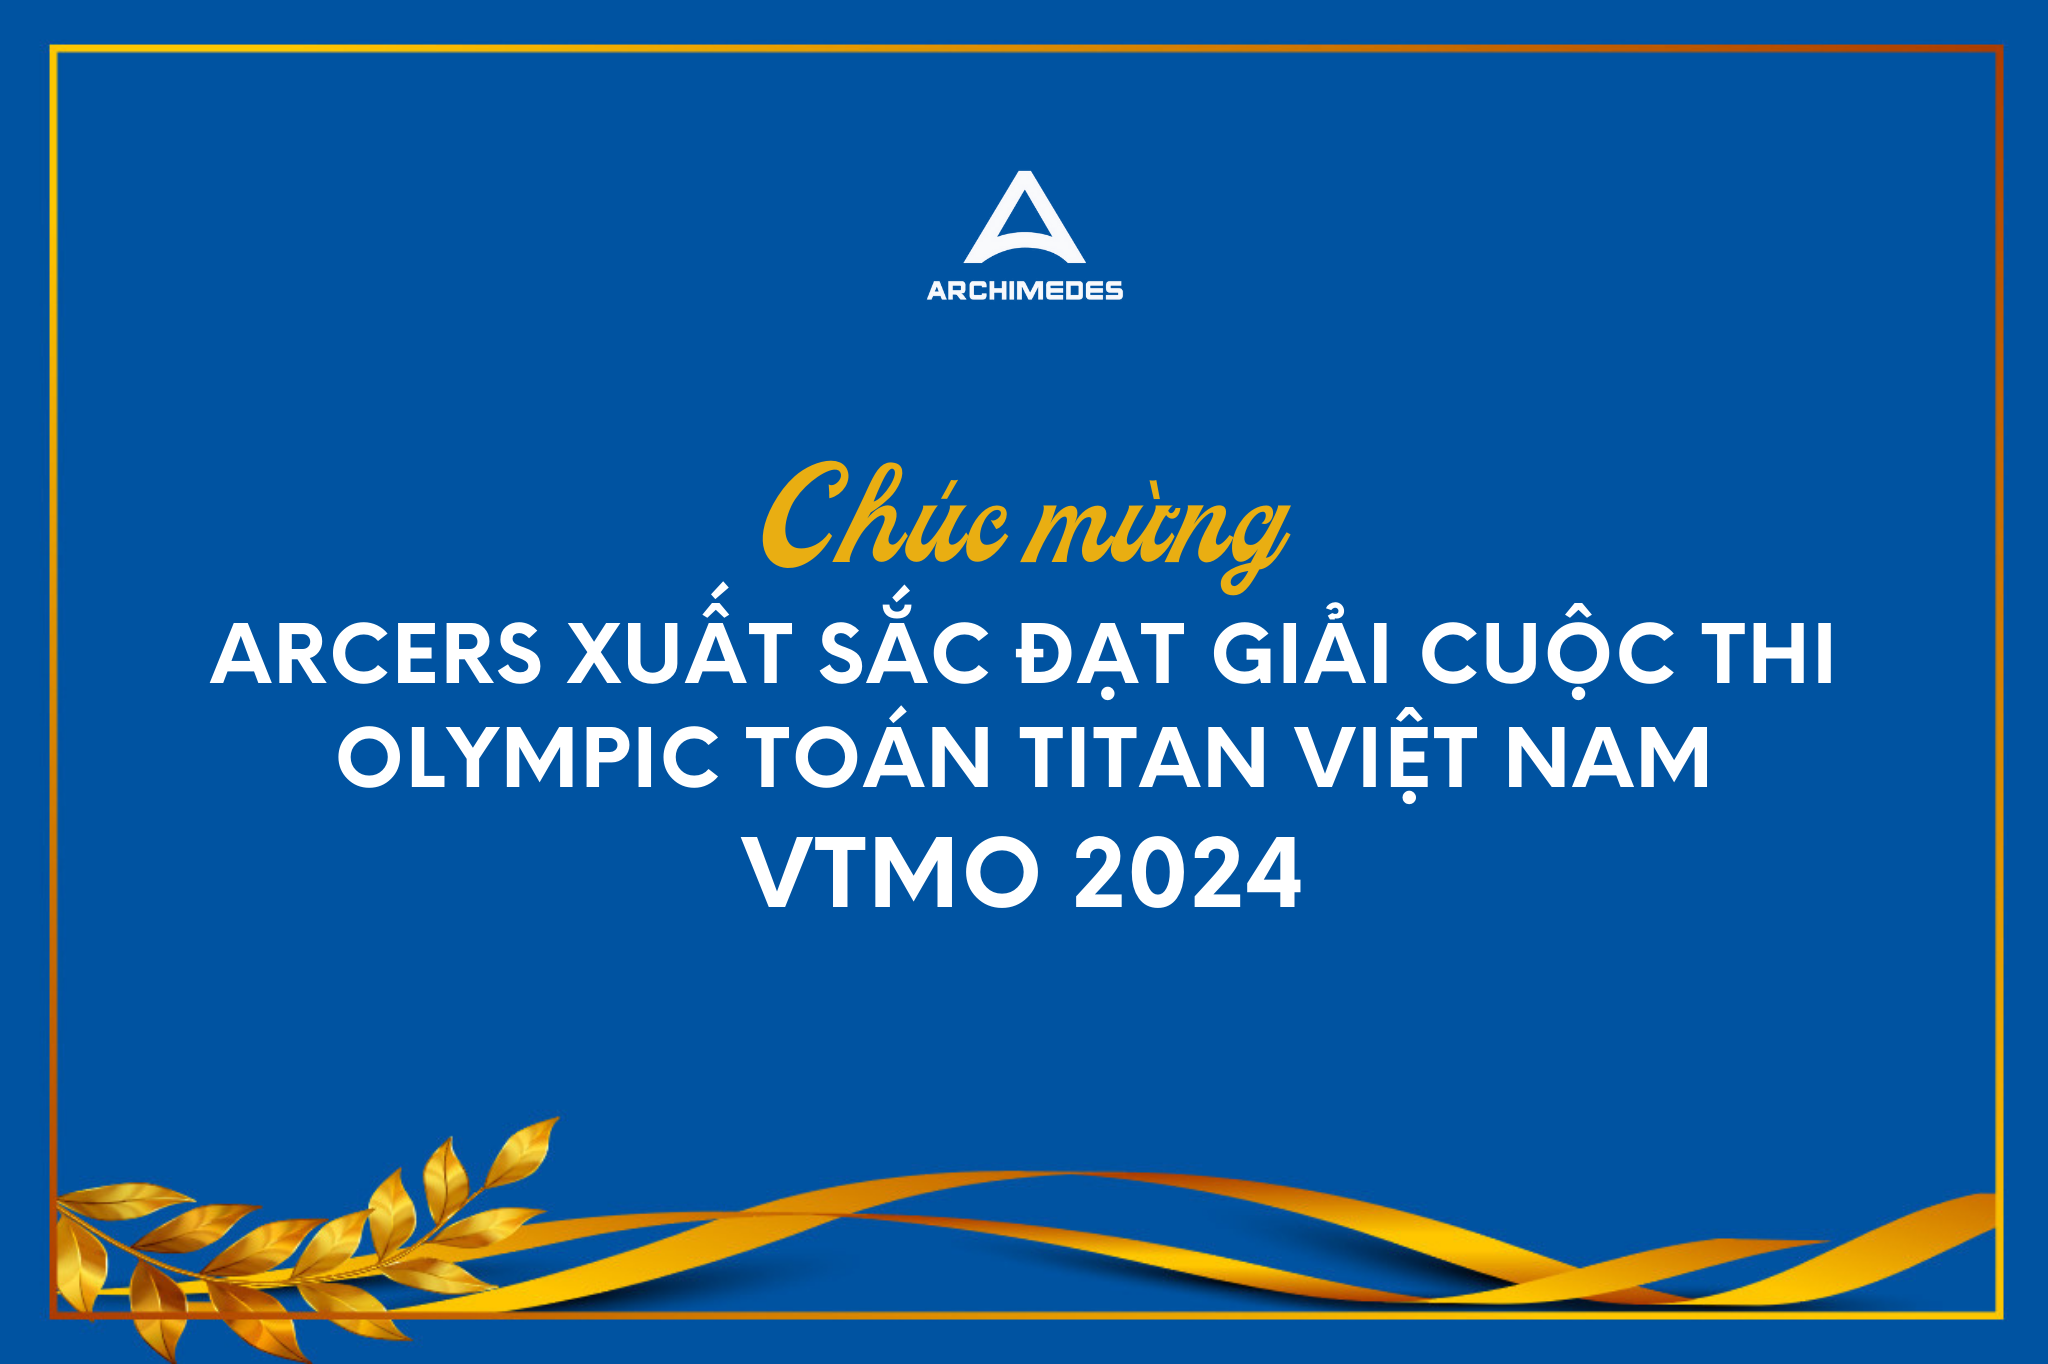 Chúc mừng Arcers xuất sắc đạt giải cuộc thi Olympic Toán Titan Việt Nam VTMO 2024️